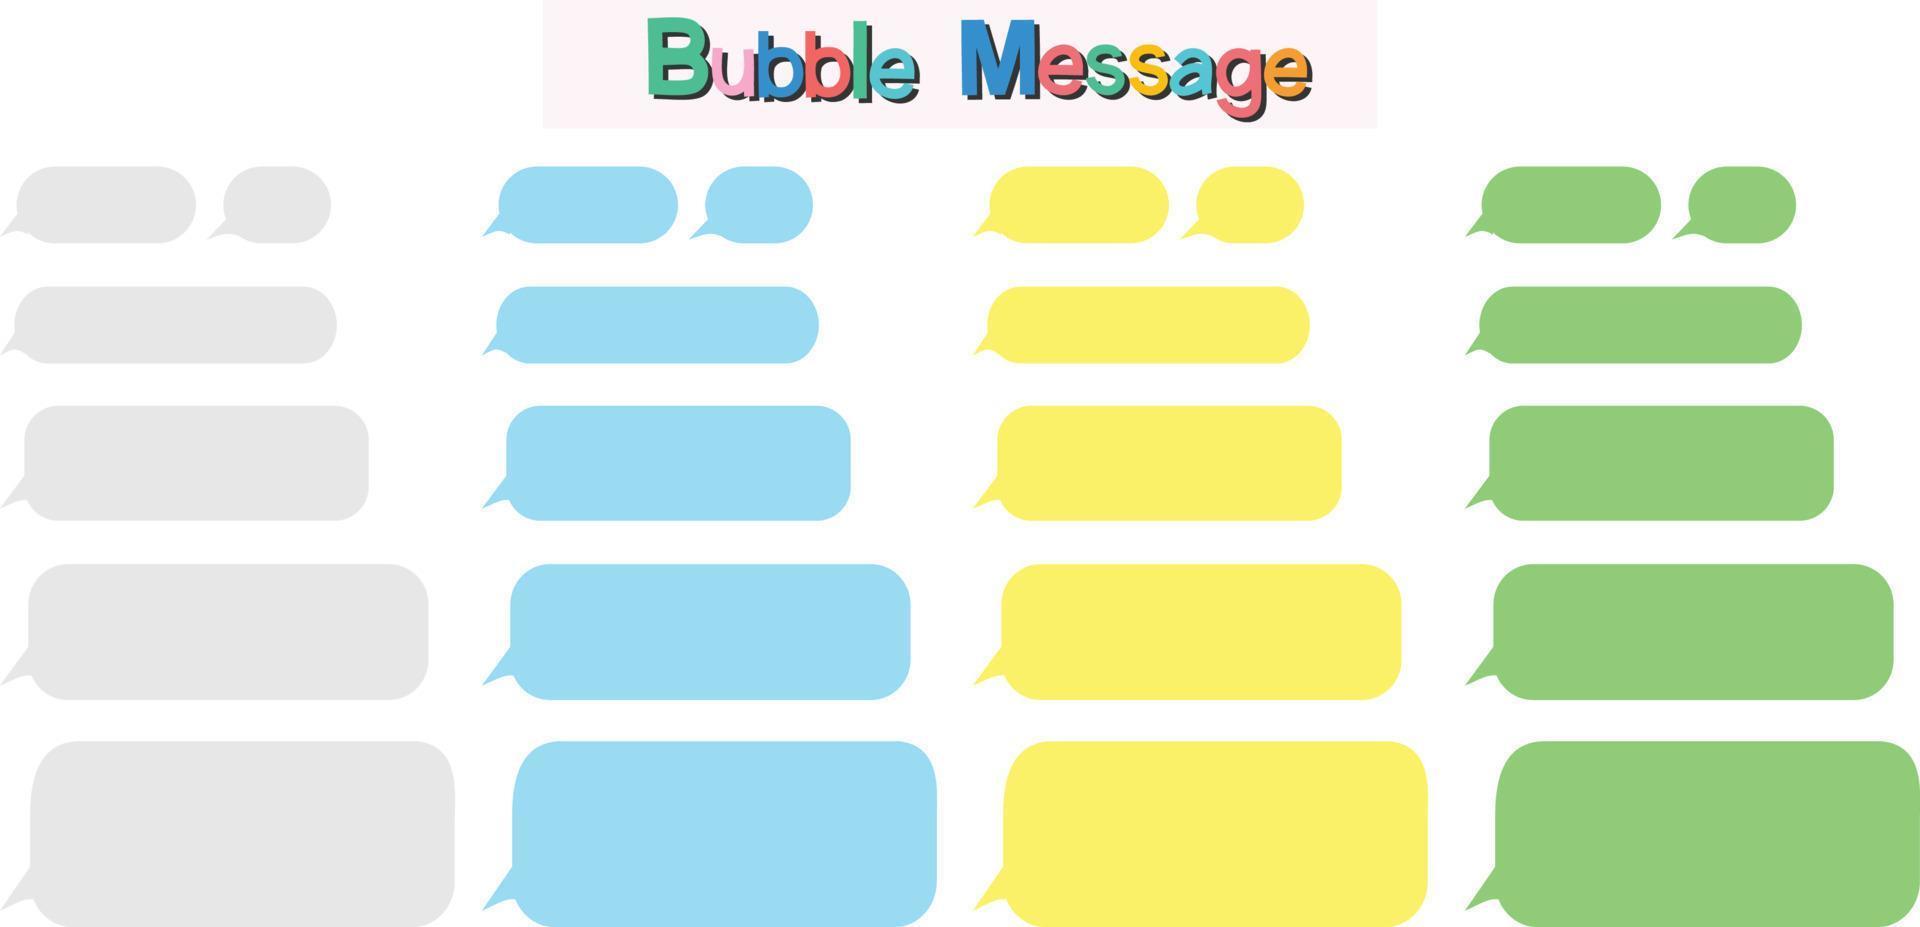 burbujas de chat de mensajes en fondo blanco. vector